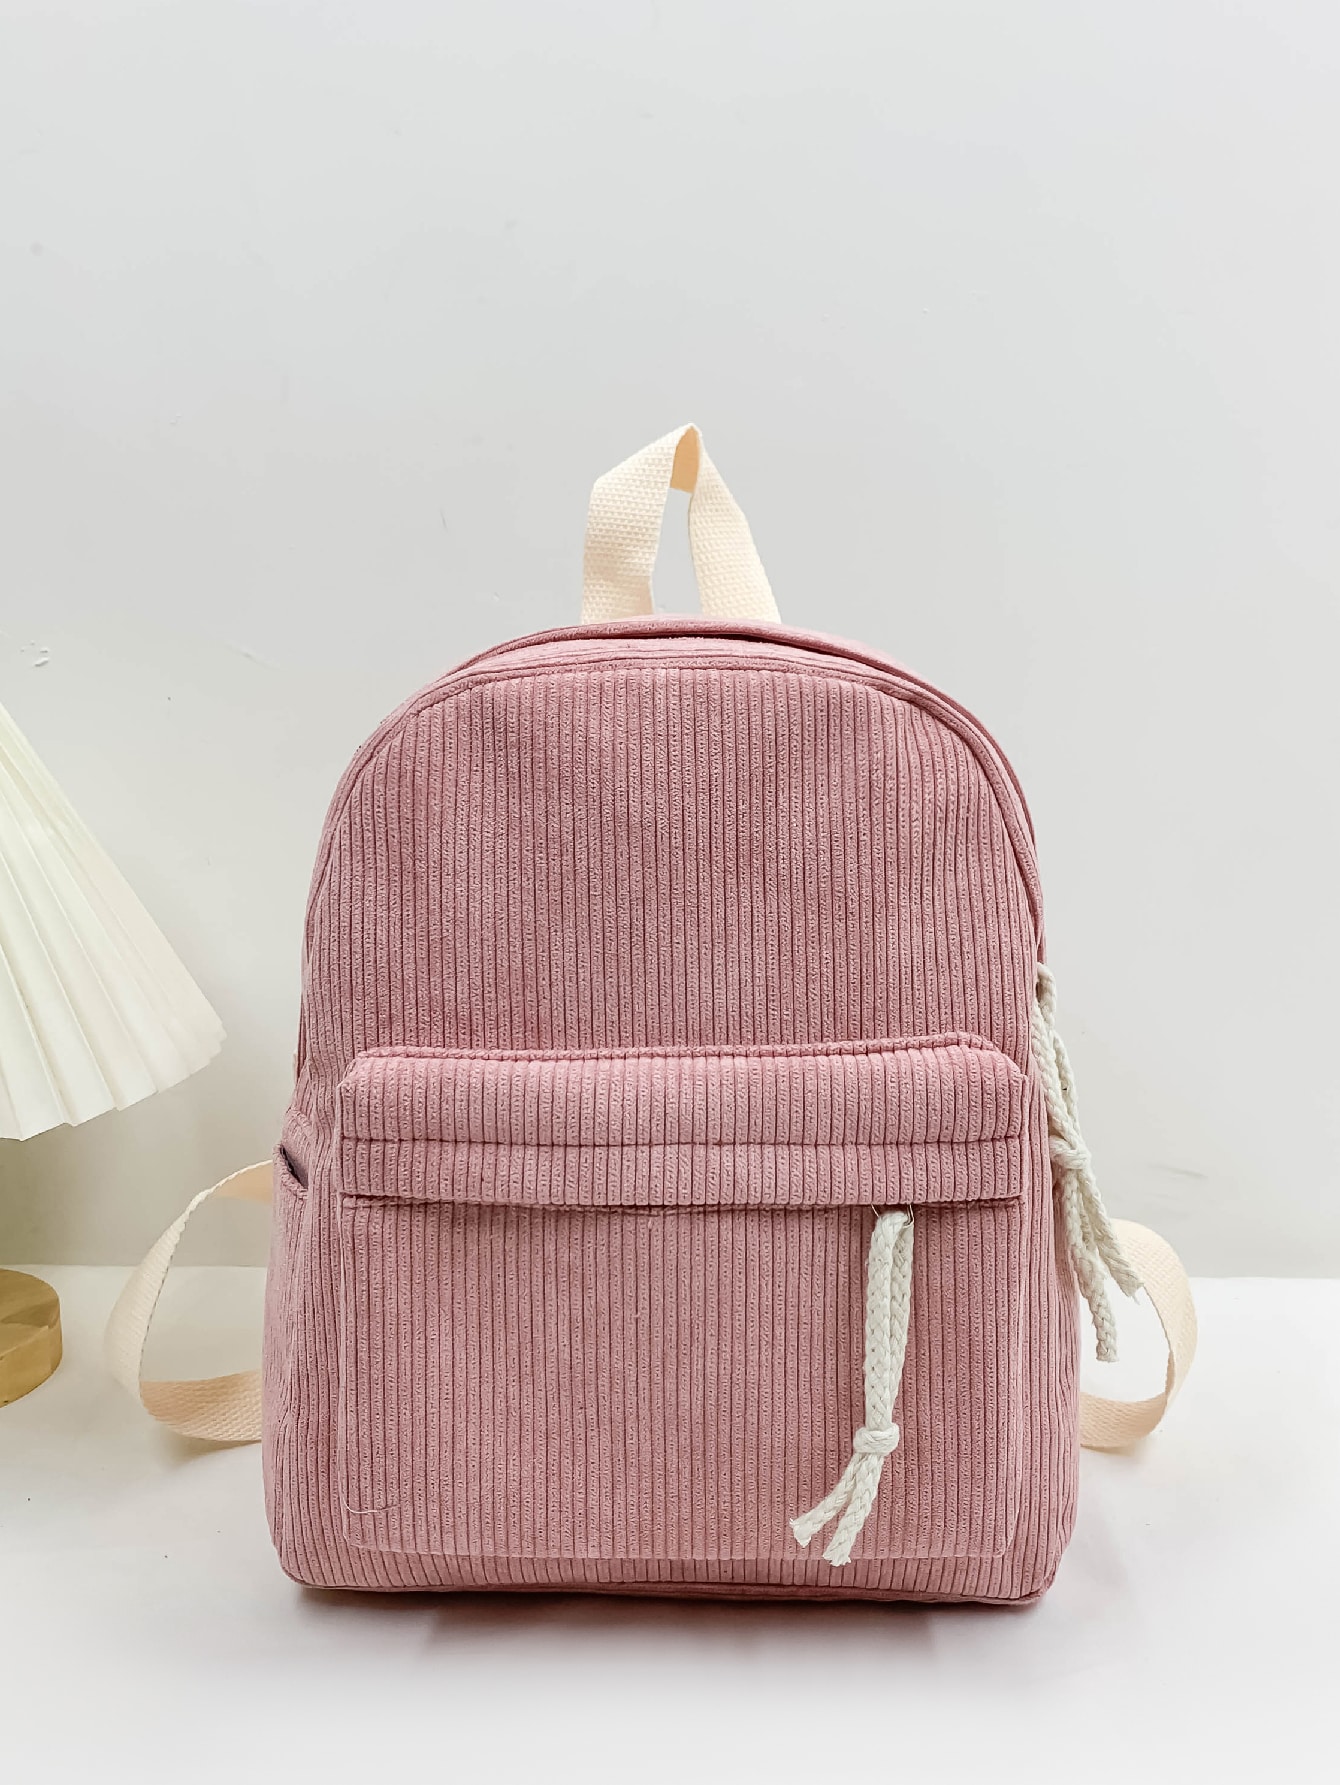 Классический рюкзак с графическим рисунком вельвета, розовый легкий портативный однотонный вельветовый модный повседневный рюкзак черный